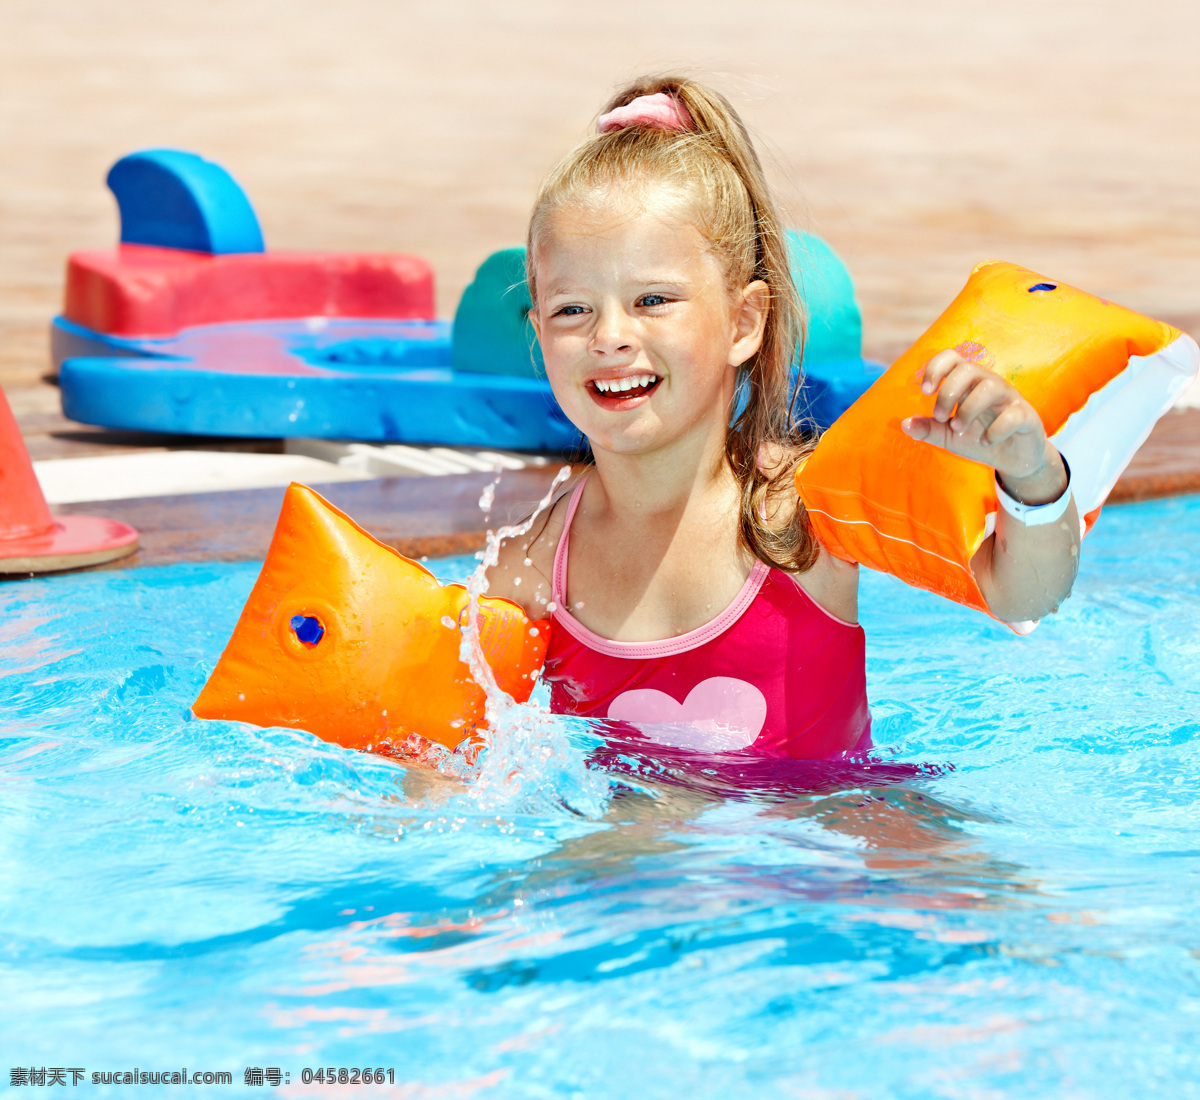 游泳 小女孩 儿童暑假 外国儿童 可爱 小孩儿 孩子 儿童图片 人物图片